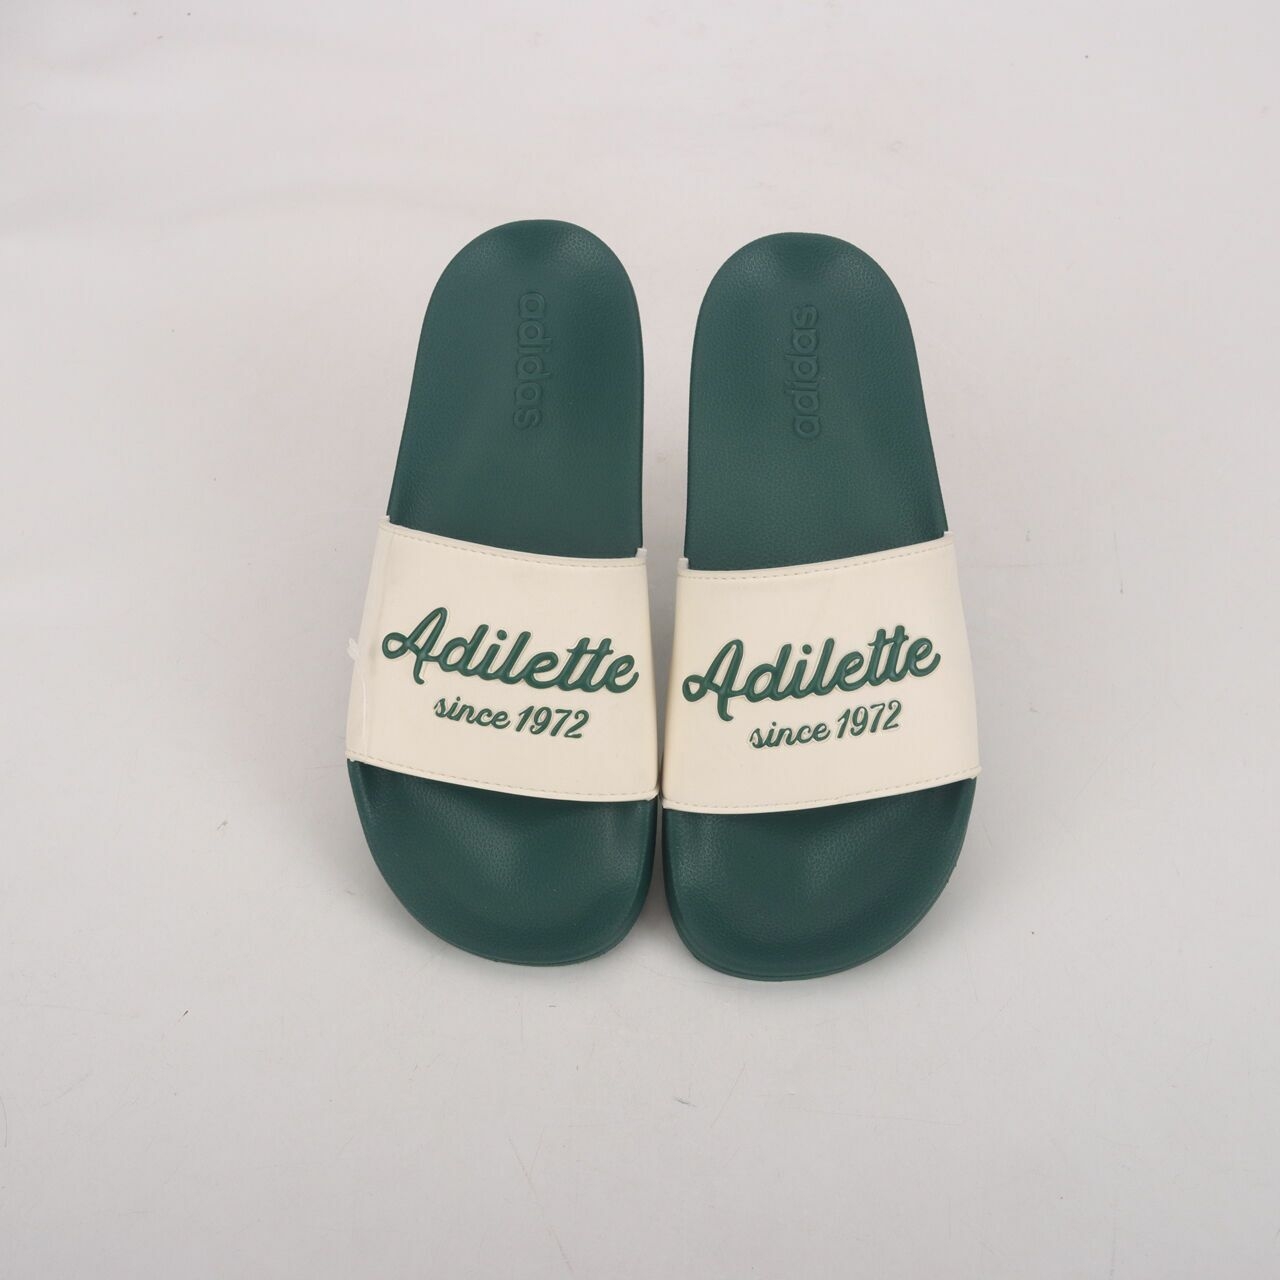 Adidas Dark Green Sandals